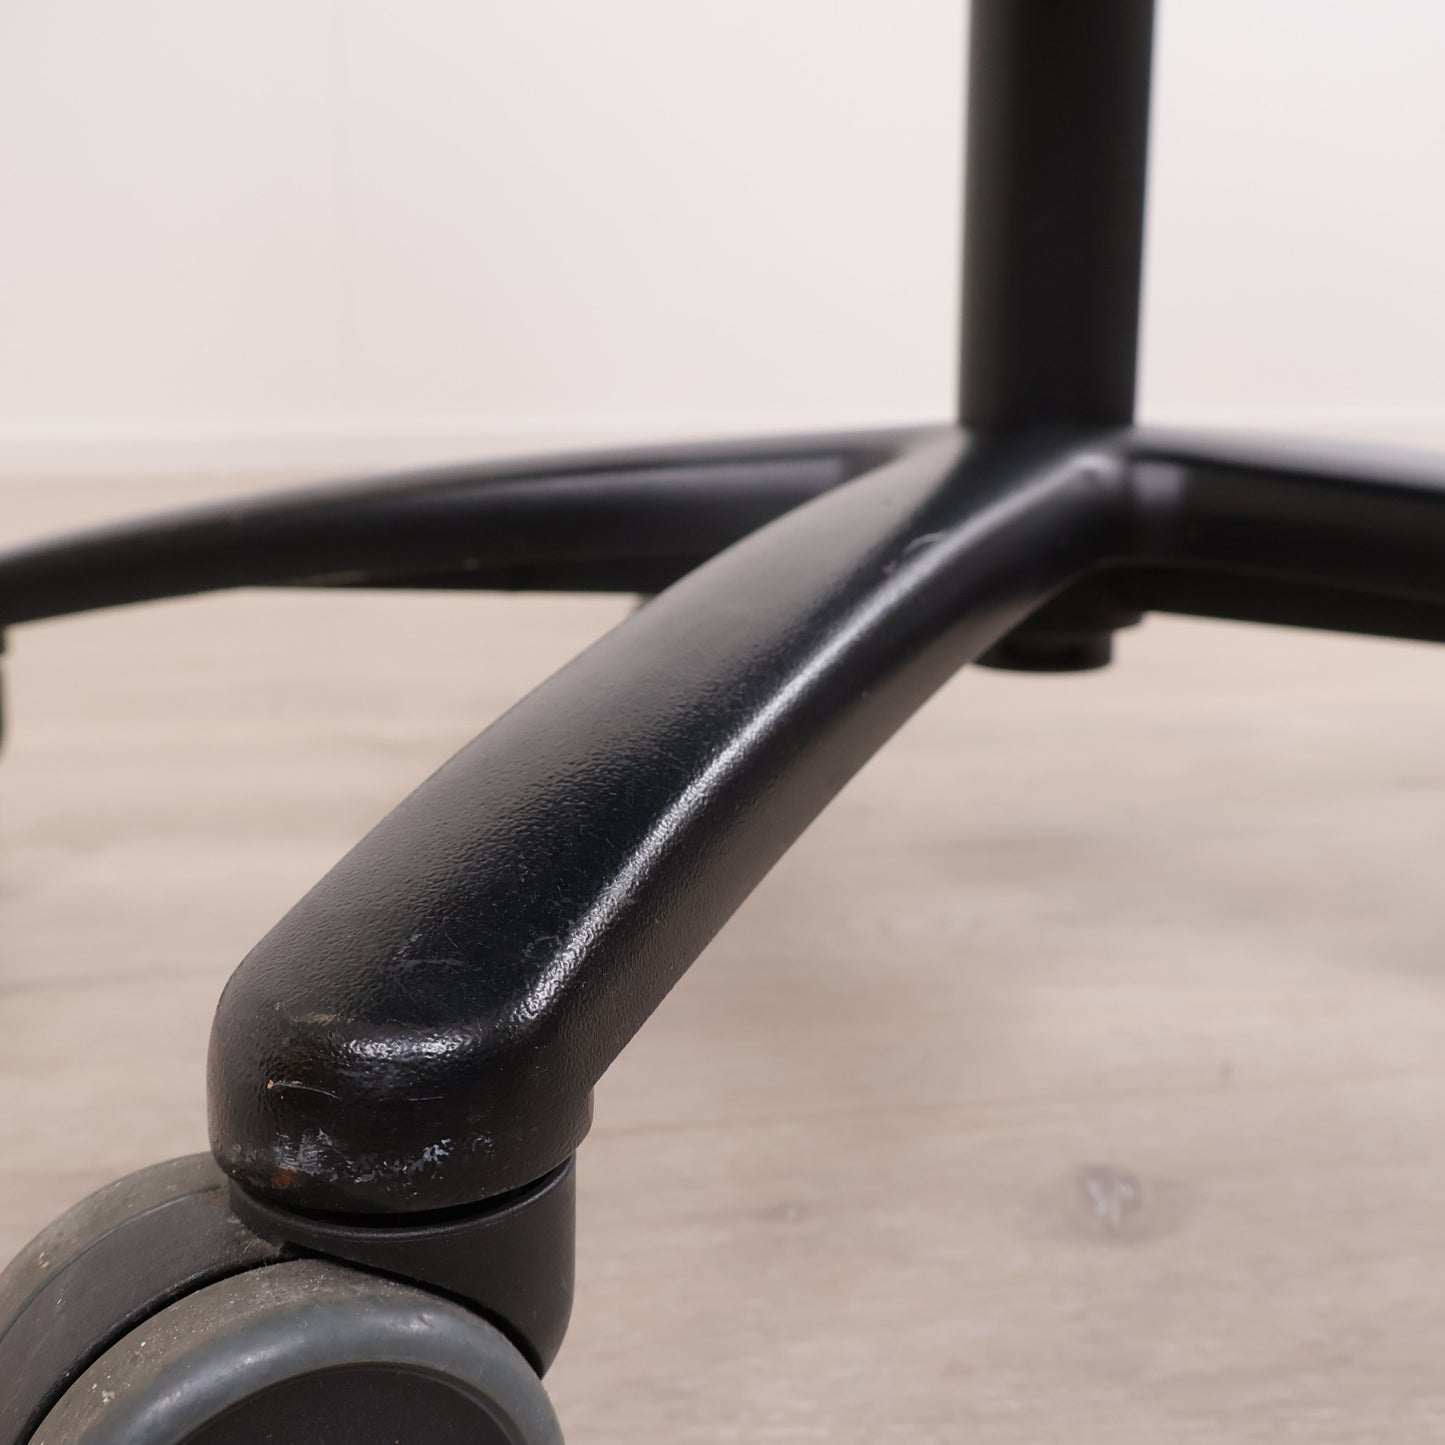 Nyrenset | RH 839 helsort kontorstol med høy rygg nakkestøtte